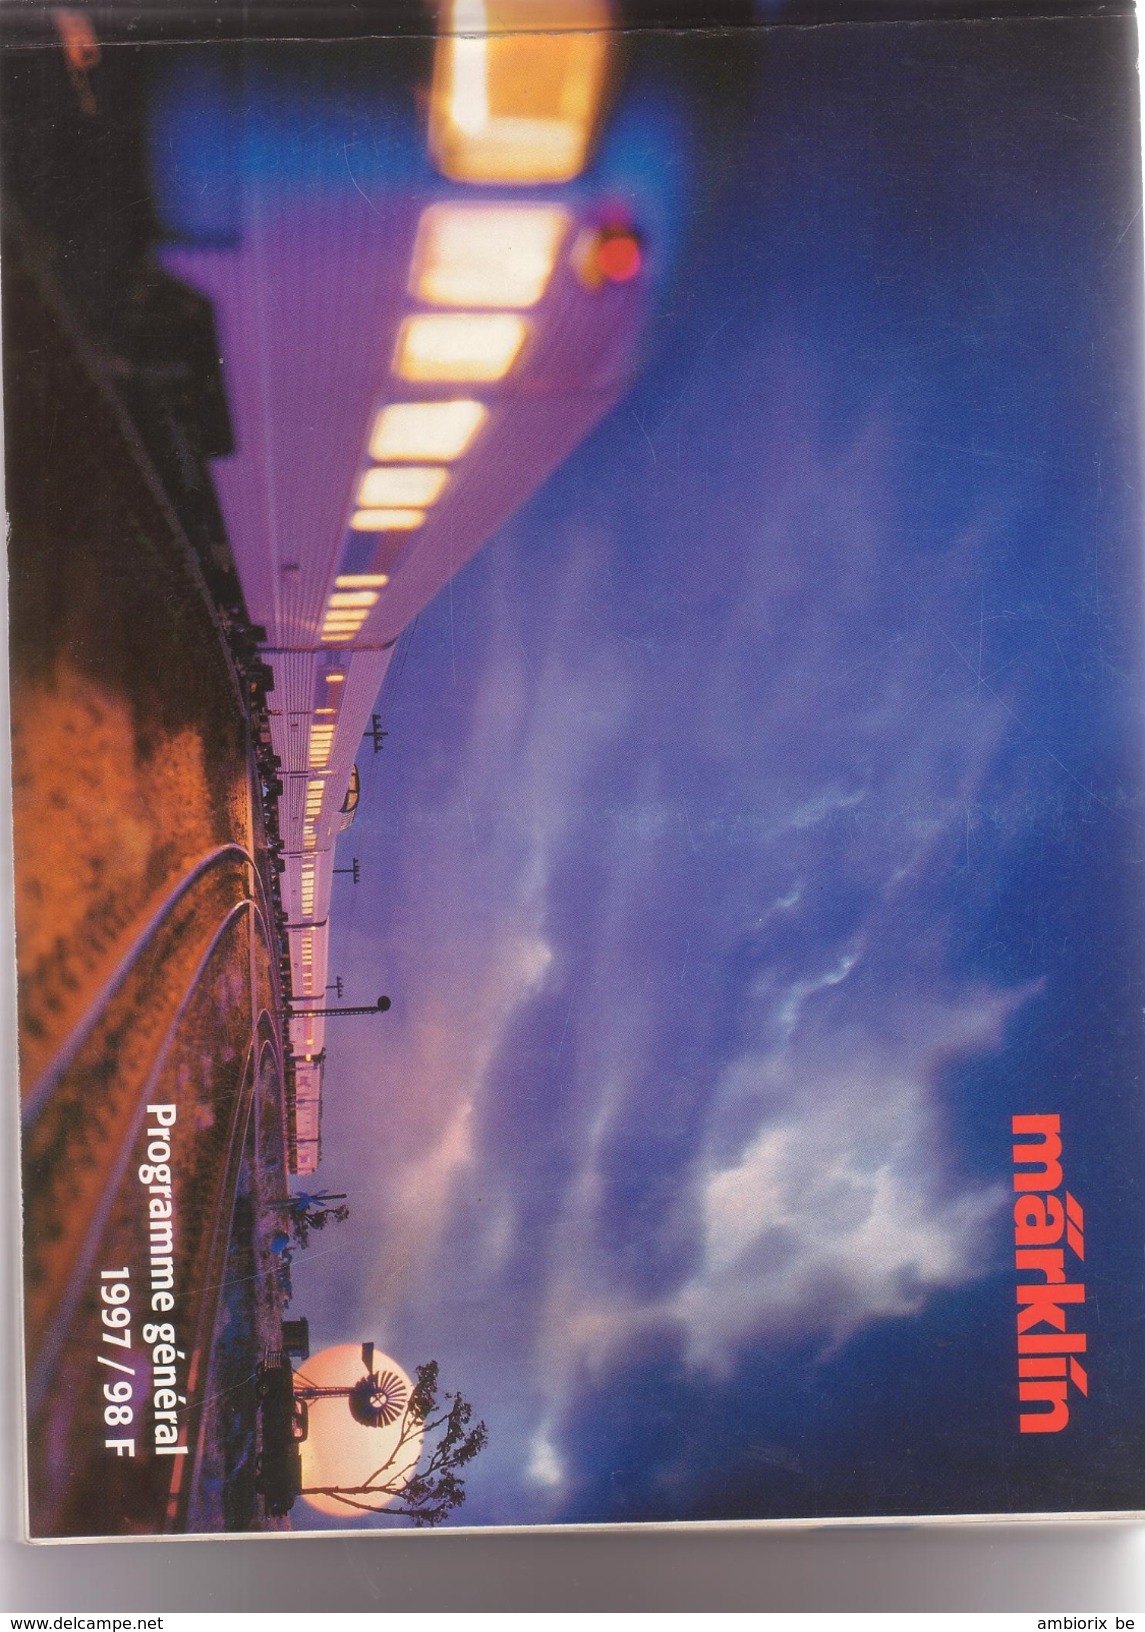 Marklin - Catalogue 1997-98 - Französisch